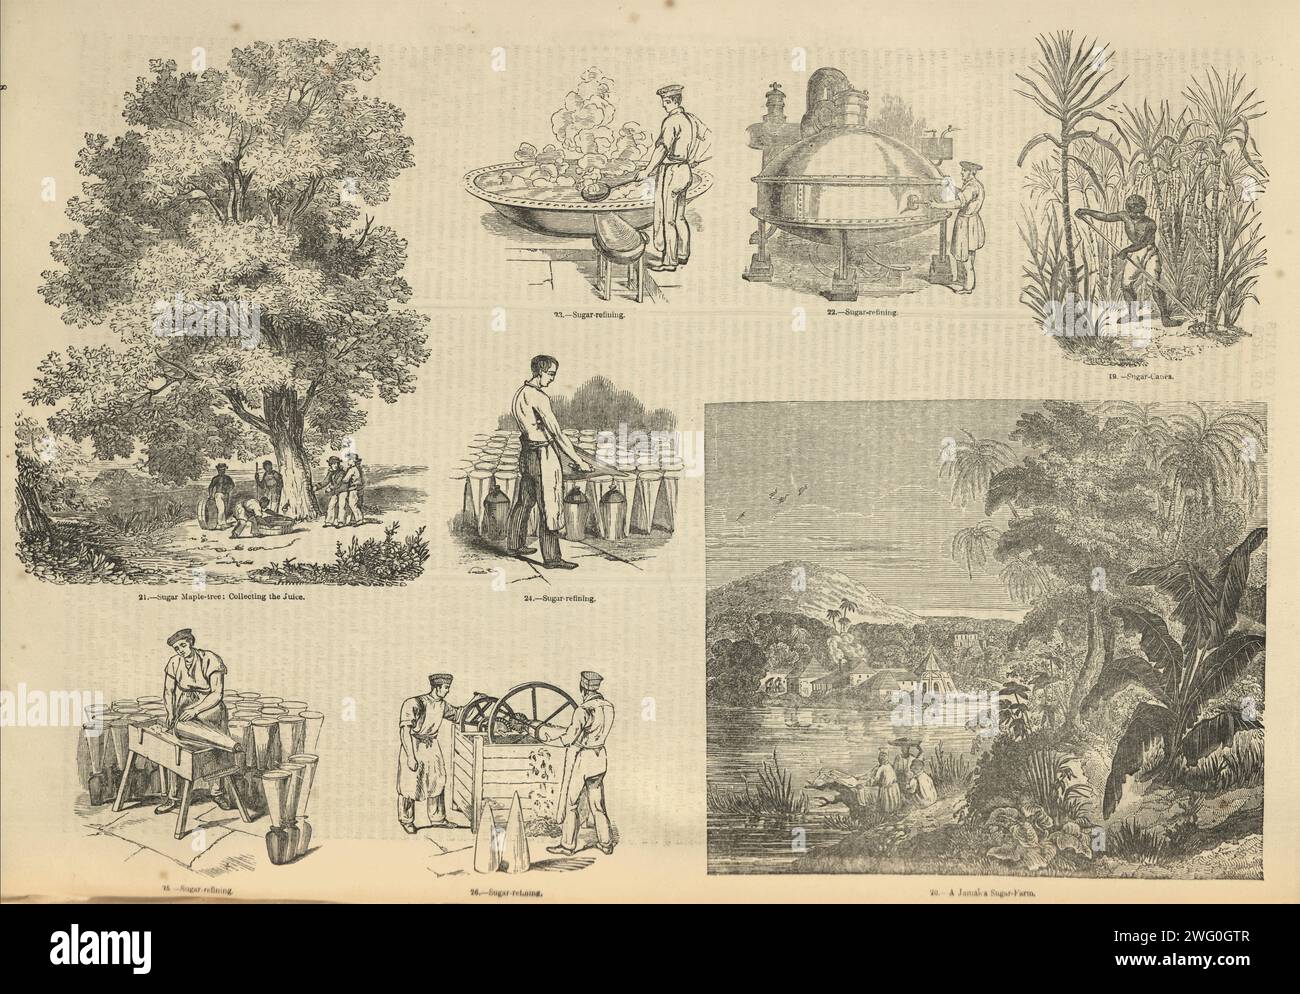 Scènes de l'industrie sucrière, raffinage, sirop d'érable, canne à sucre, années 1850 victoriennes Banque D'Images